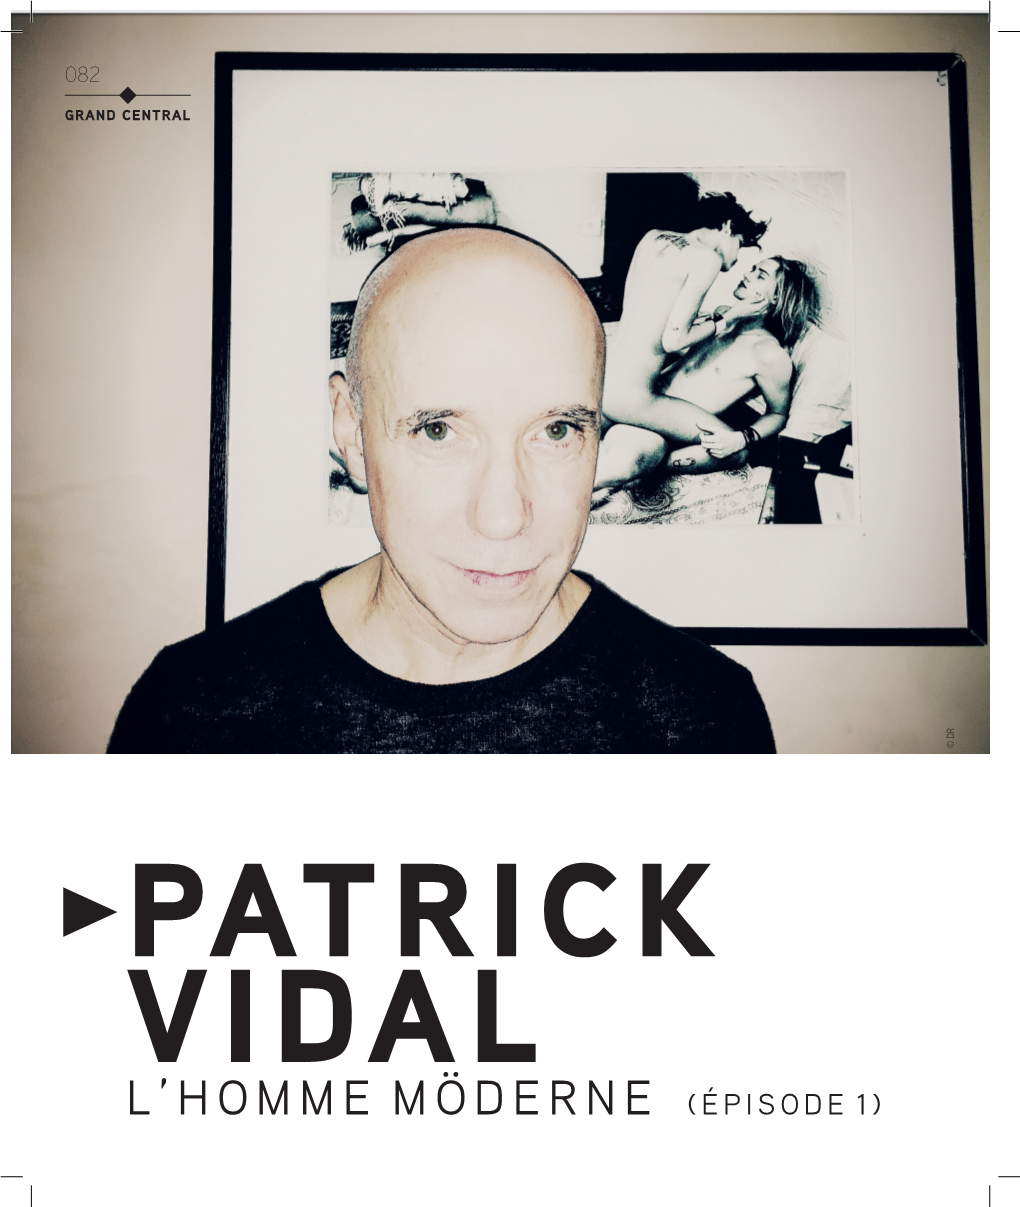 Patrick Vidal 8531.71 Ko |